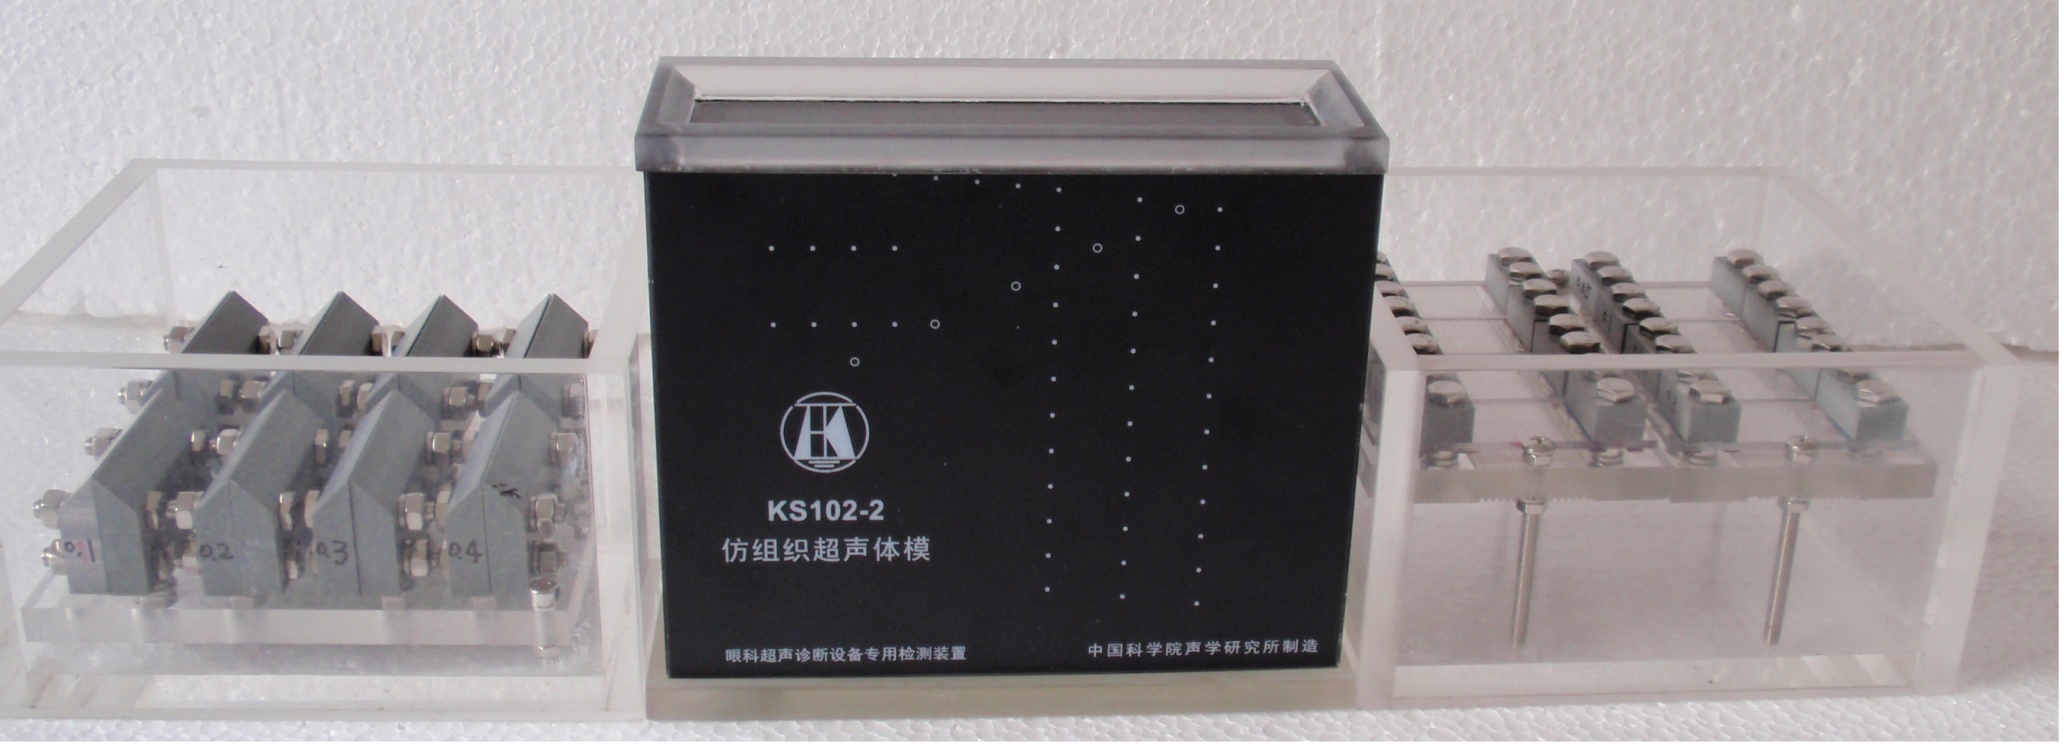 KS102-2超声体模